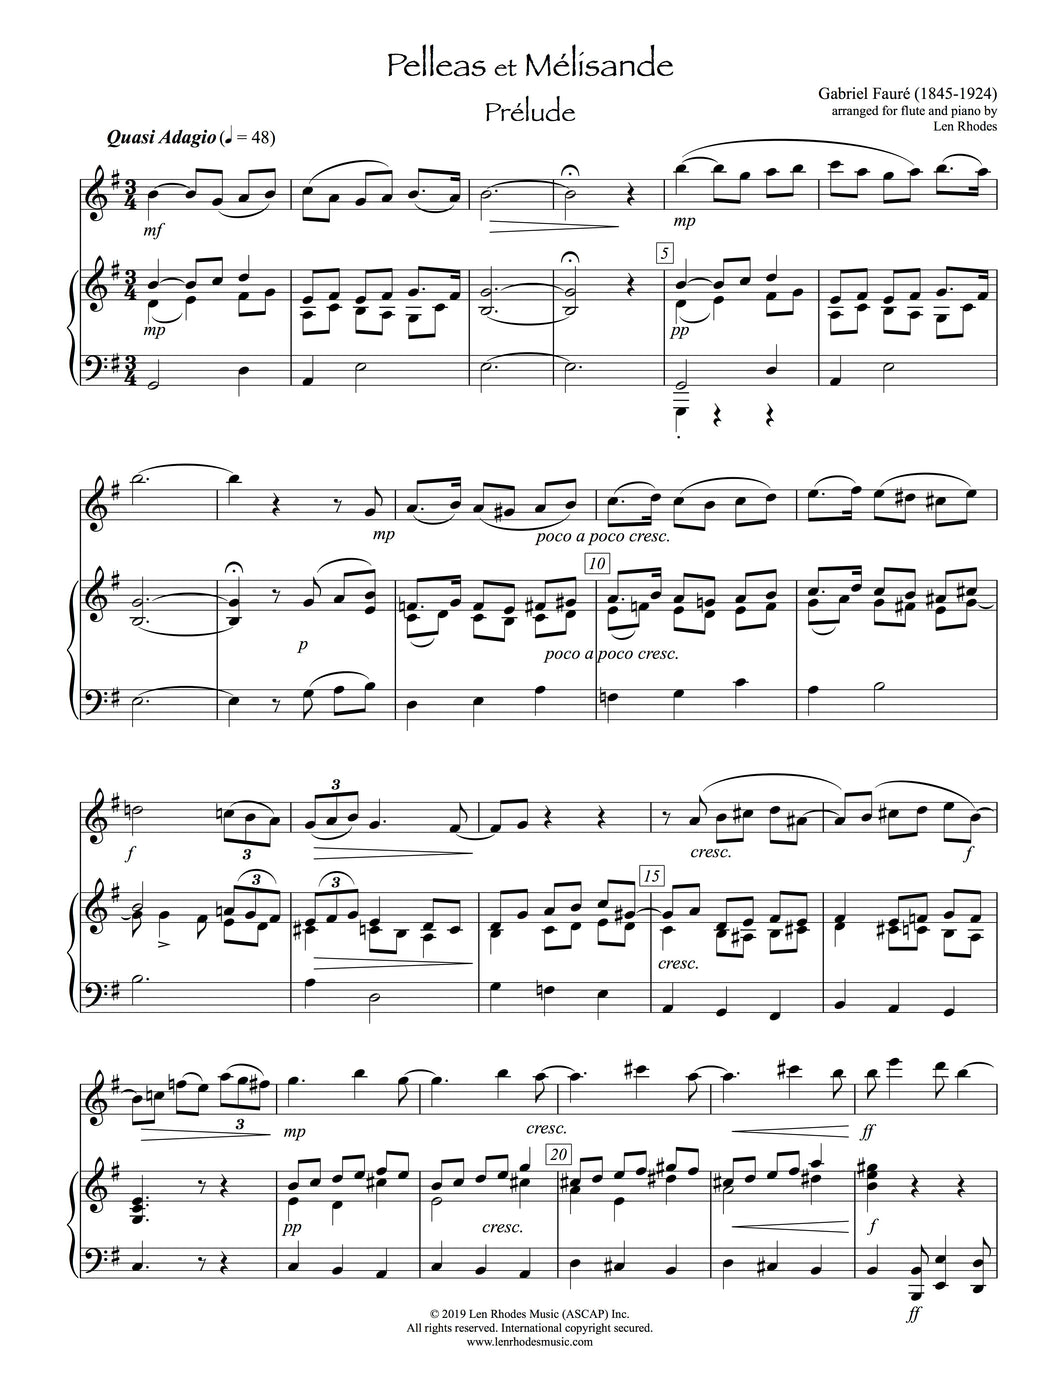 Pelleas et Mélisande, Fauré - Flute and Piano